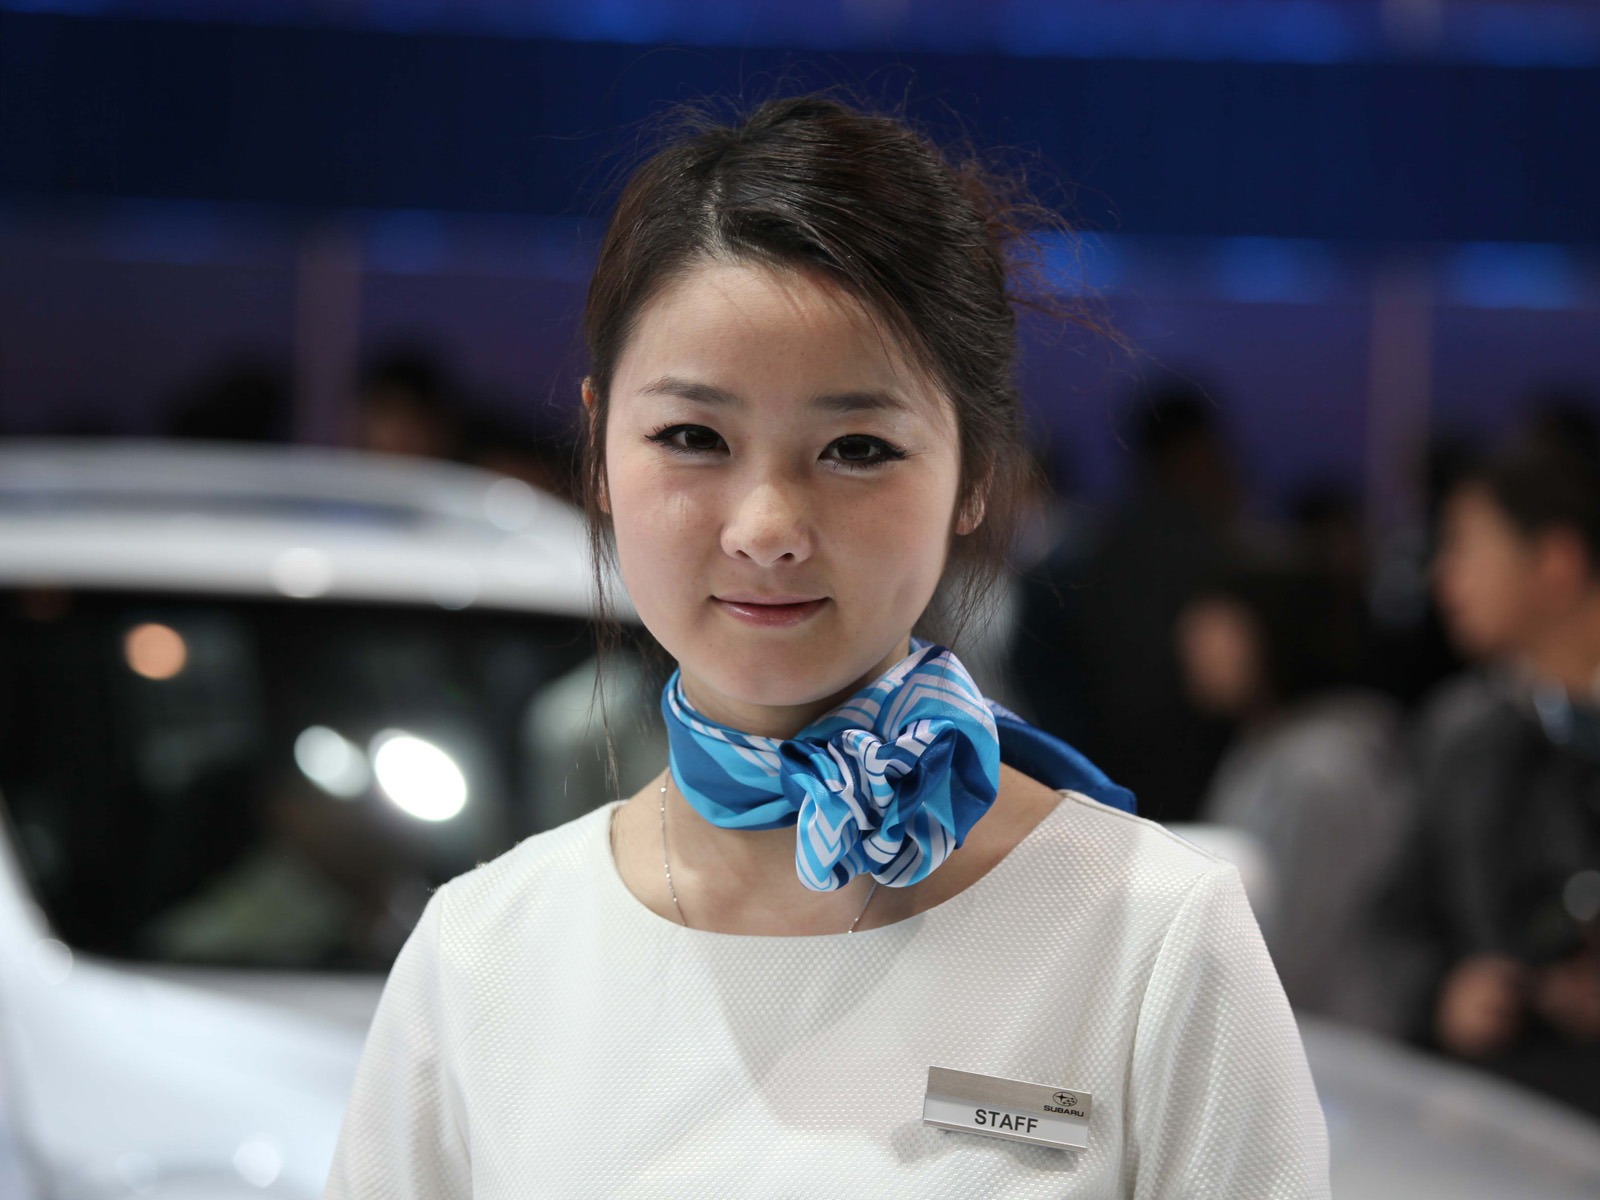 2010 v Pekingu Mezinárodním autosalonu krása (1) (vítr honí mraky práce) #22 - 1600x1200